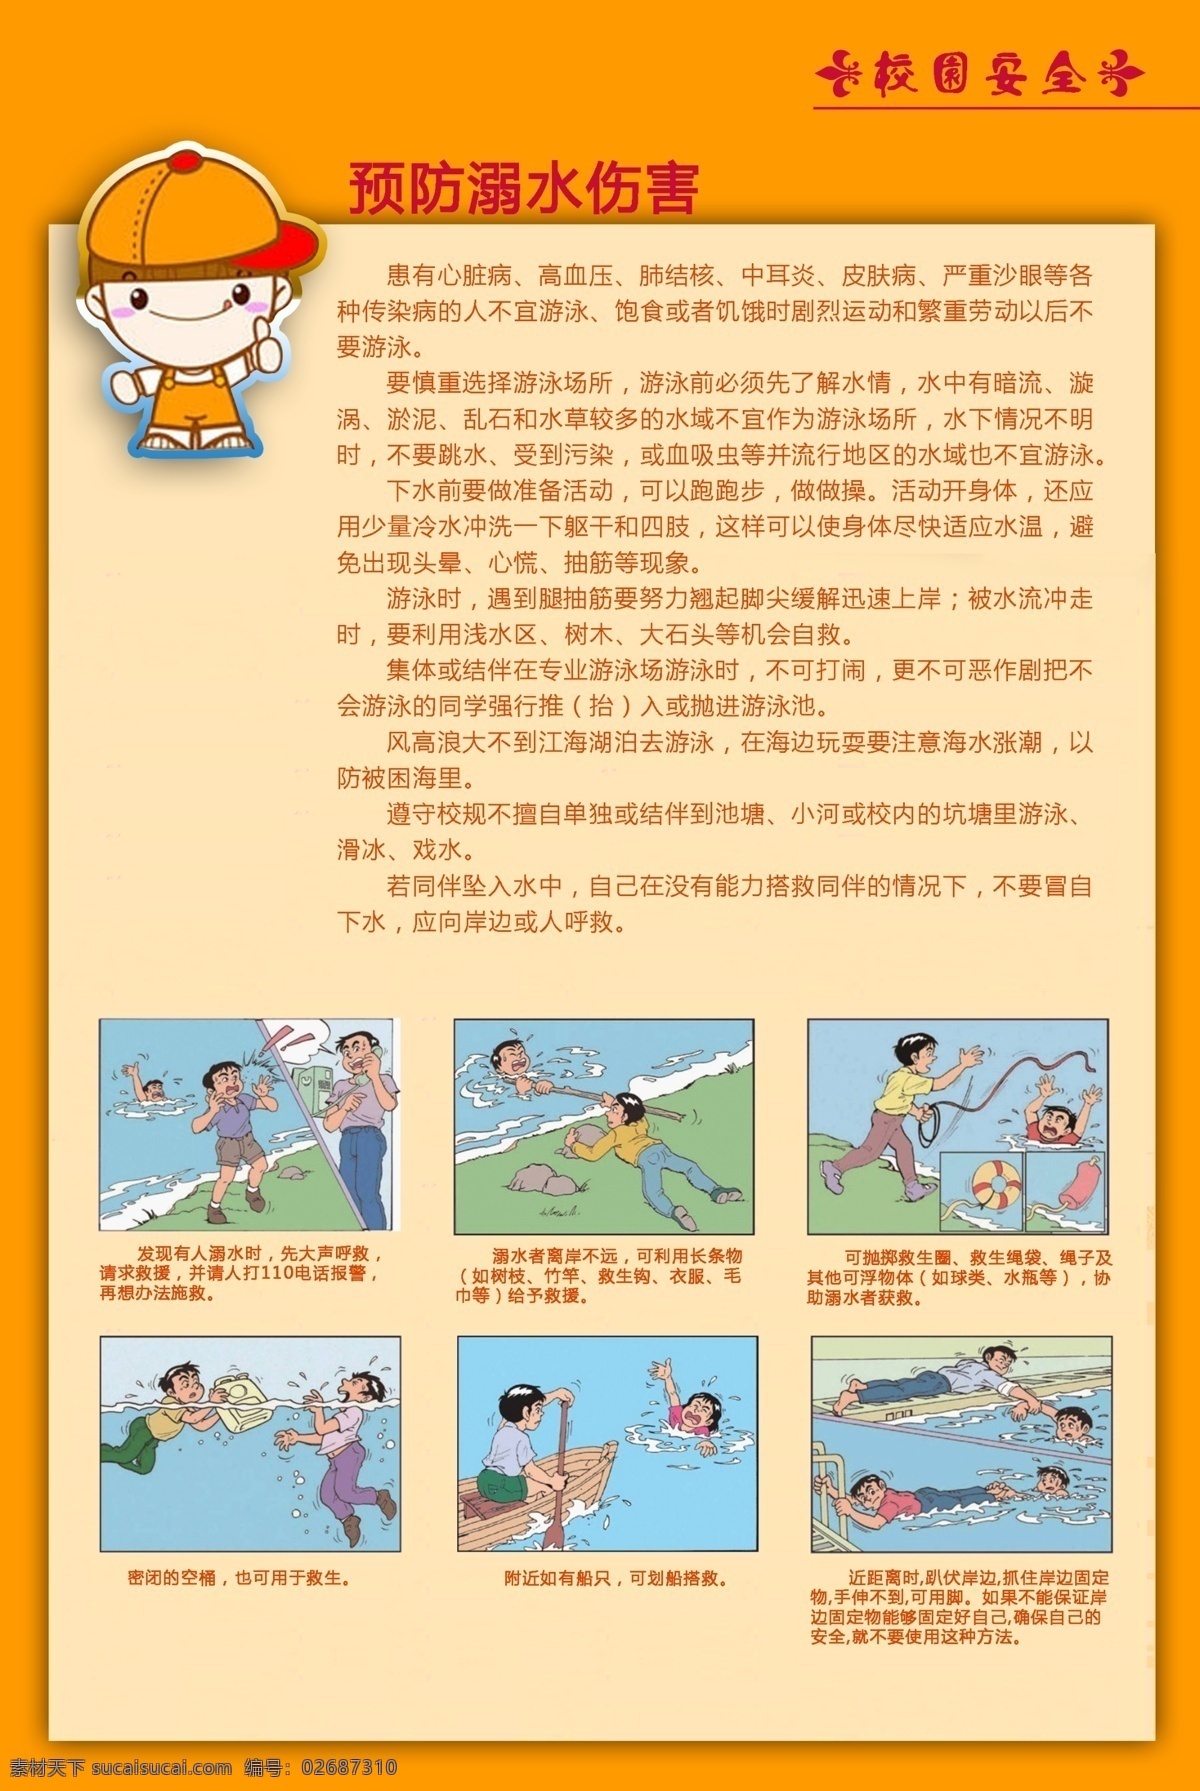 校园安全图版 校园安全 安全漫画 溺水事故 游泳 文化